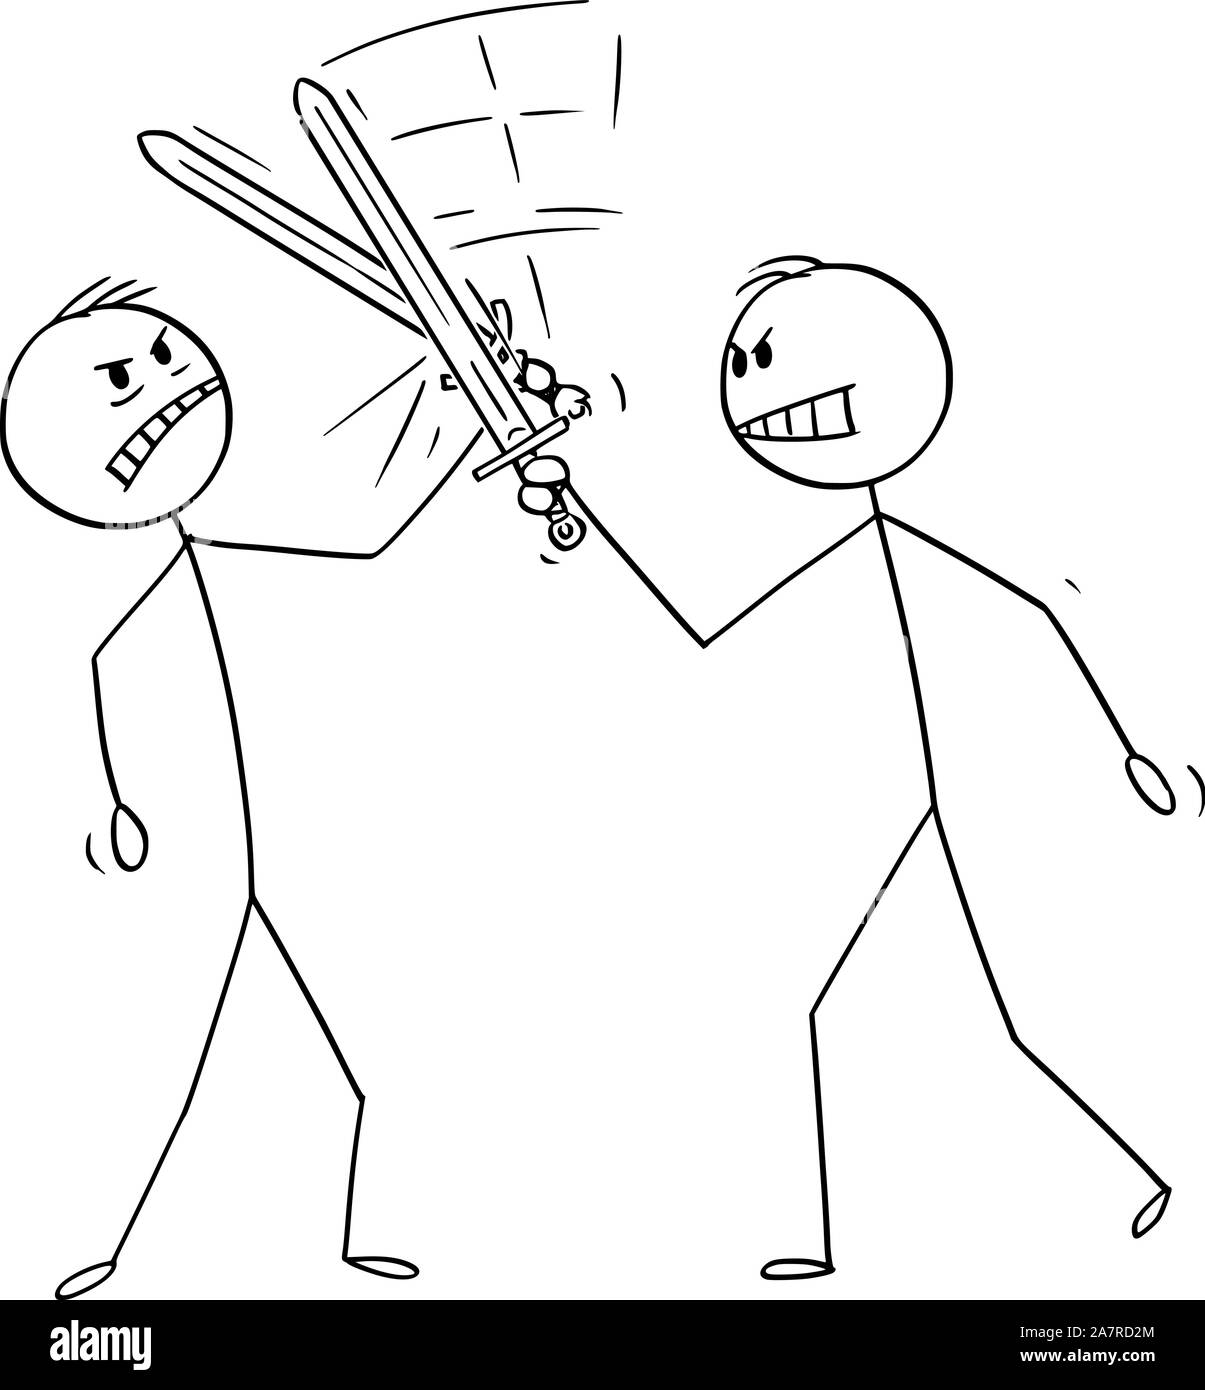 Vektor cartoon Strichmännchen Zeichnung konzeptuelle Abbildung von zwei Männern oder Geschäftsleute Kampf mit Schwertern oder Fechten. Das Konzept des Wettbewerbs. Stock Vektor